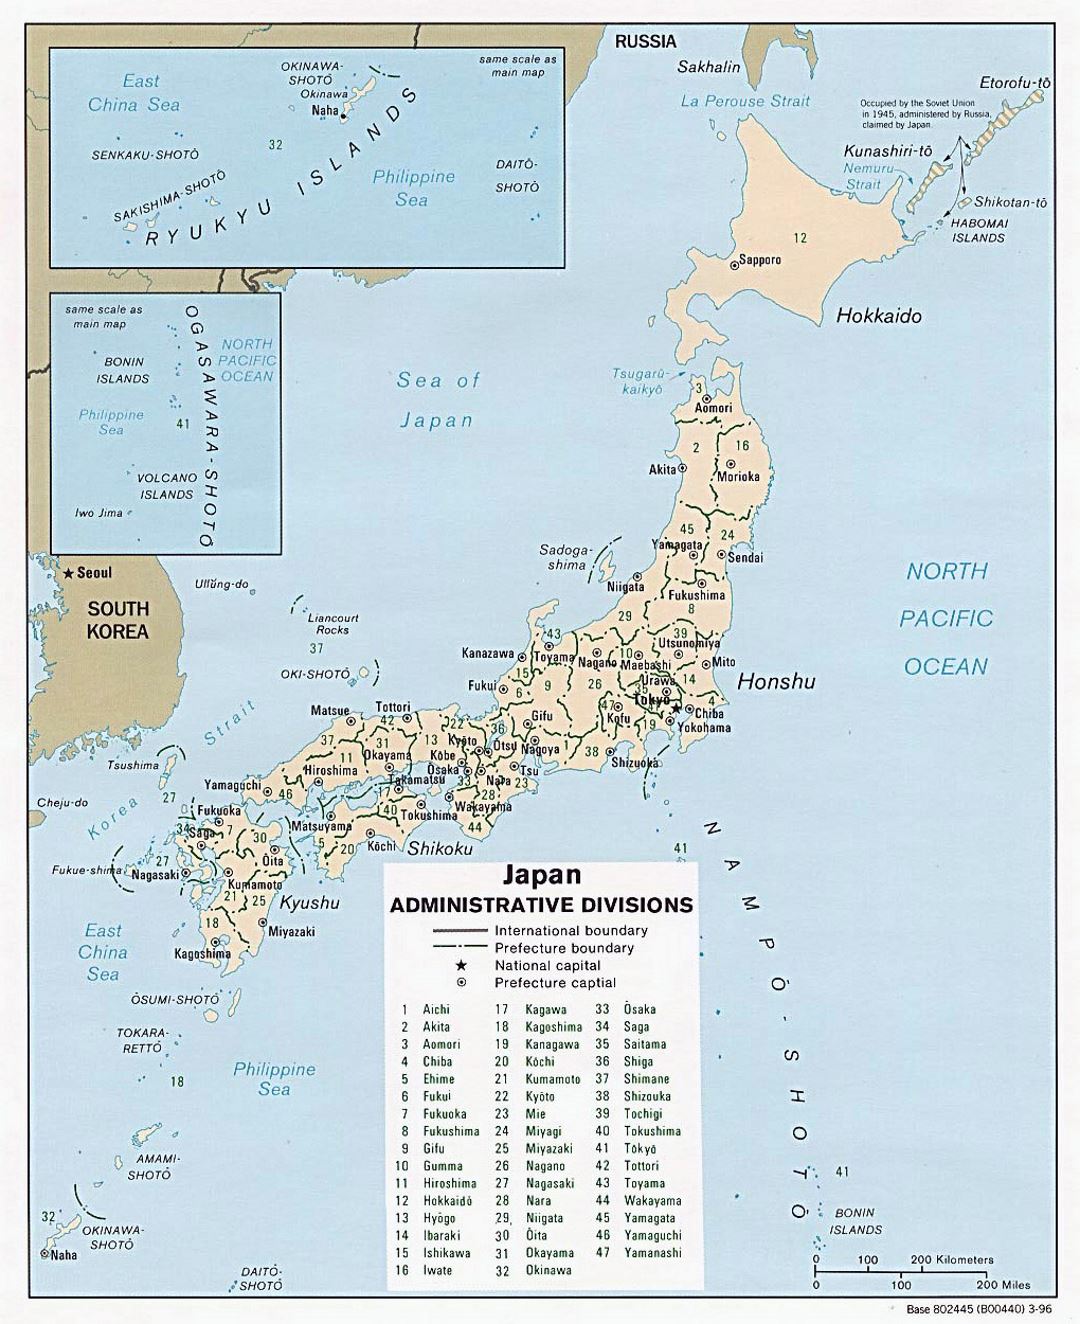 Detallado mapa de administrativas divisiones de Japón - 1996